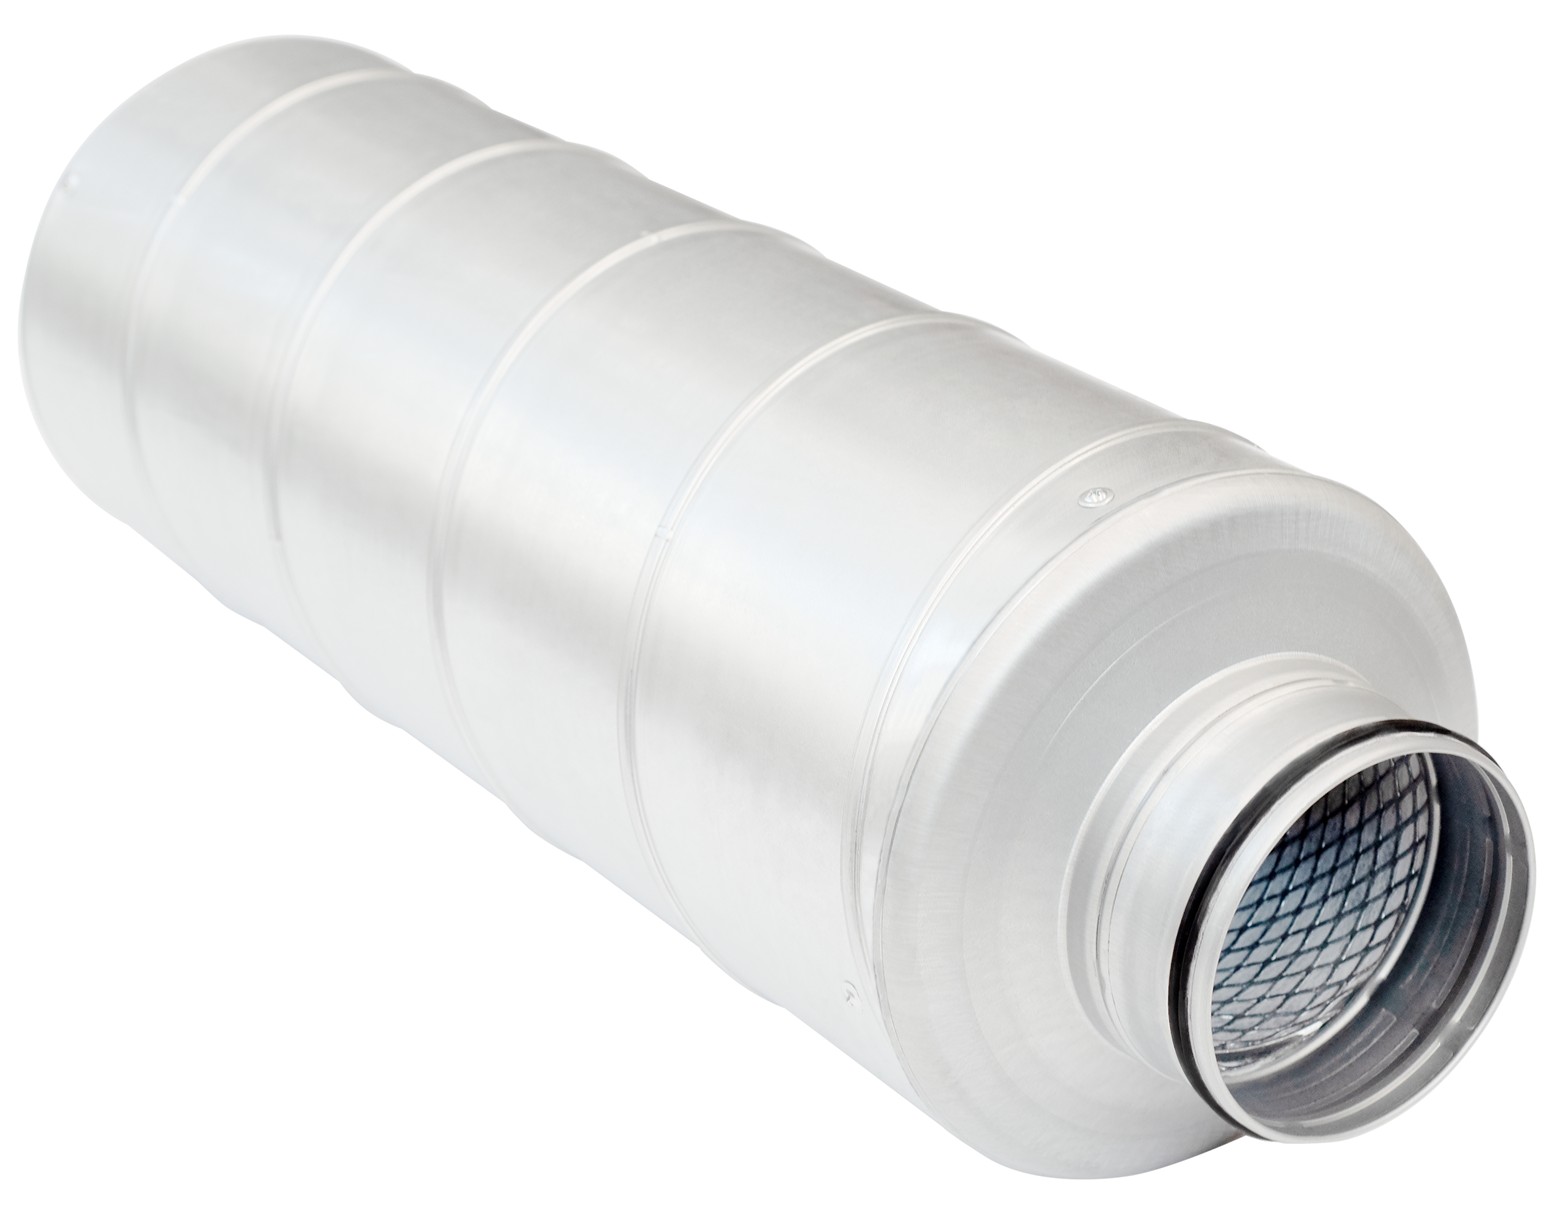 Купить вентиляционный шумоглушитель из оцинкованной стали Salda Mute 100x600 в Киеве